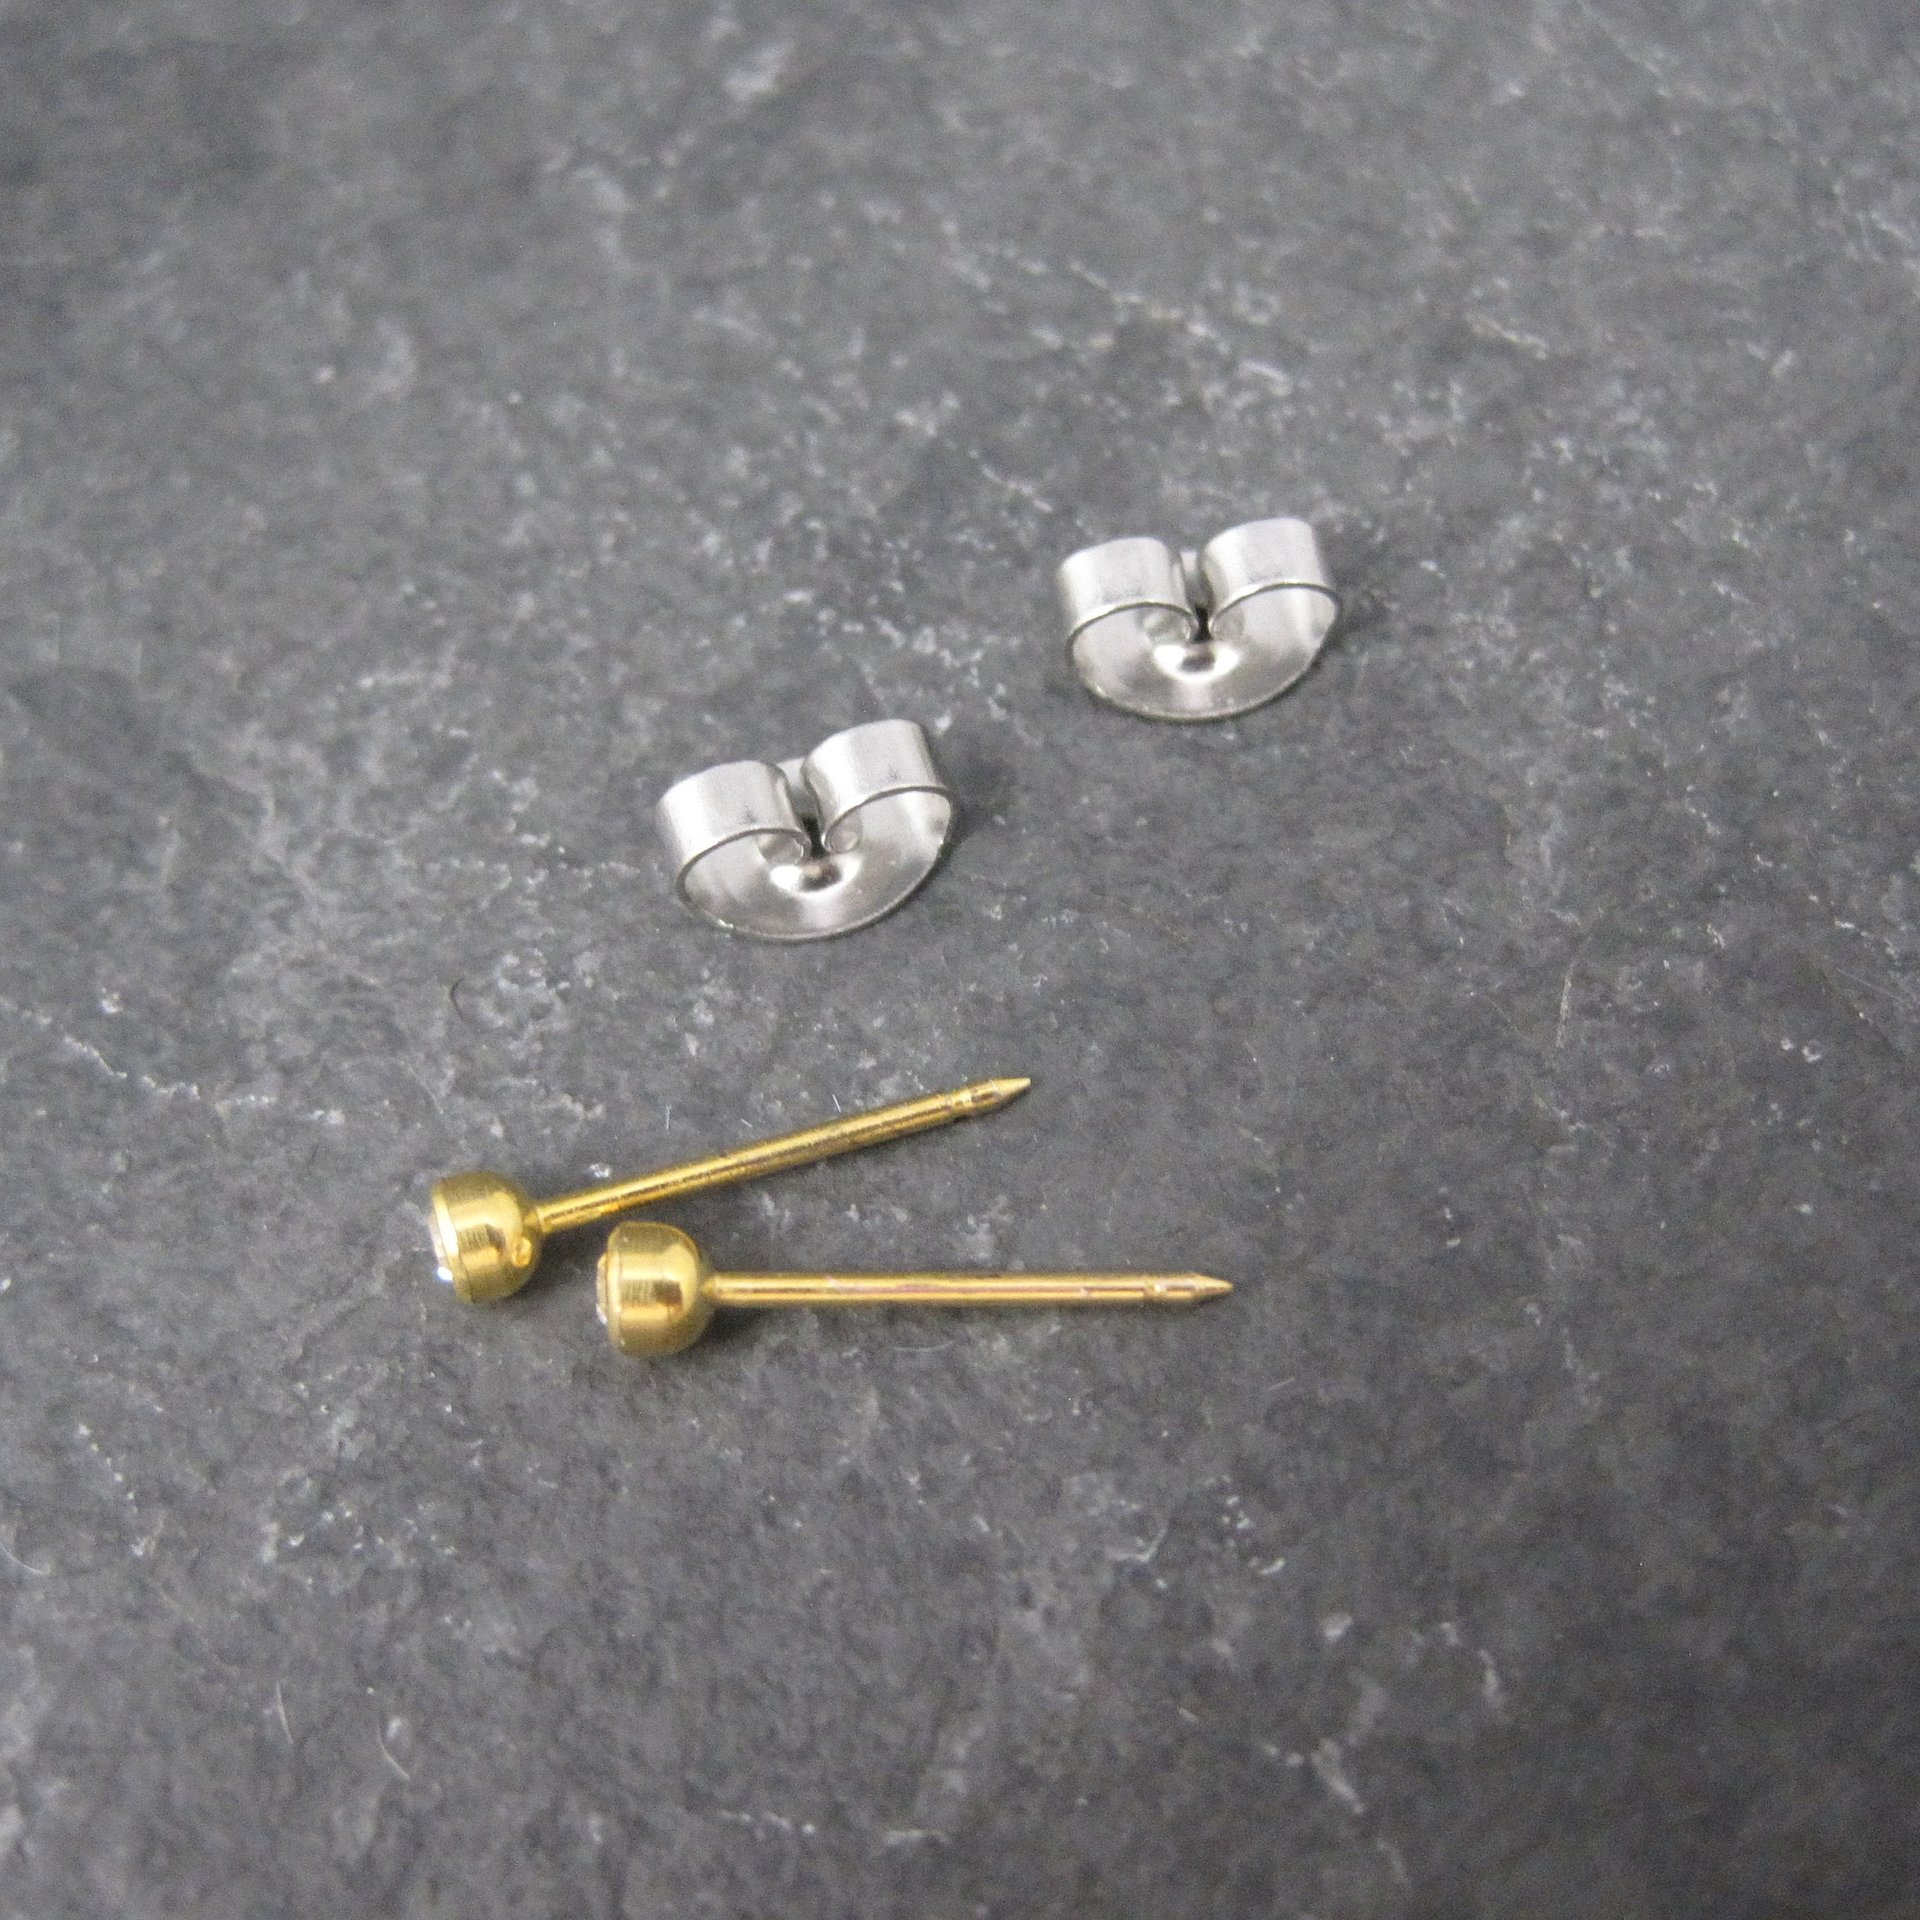 90s 3mm 14K Crystal Bezel Piercing Stud Earrings